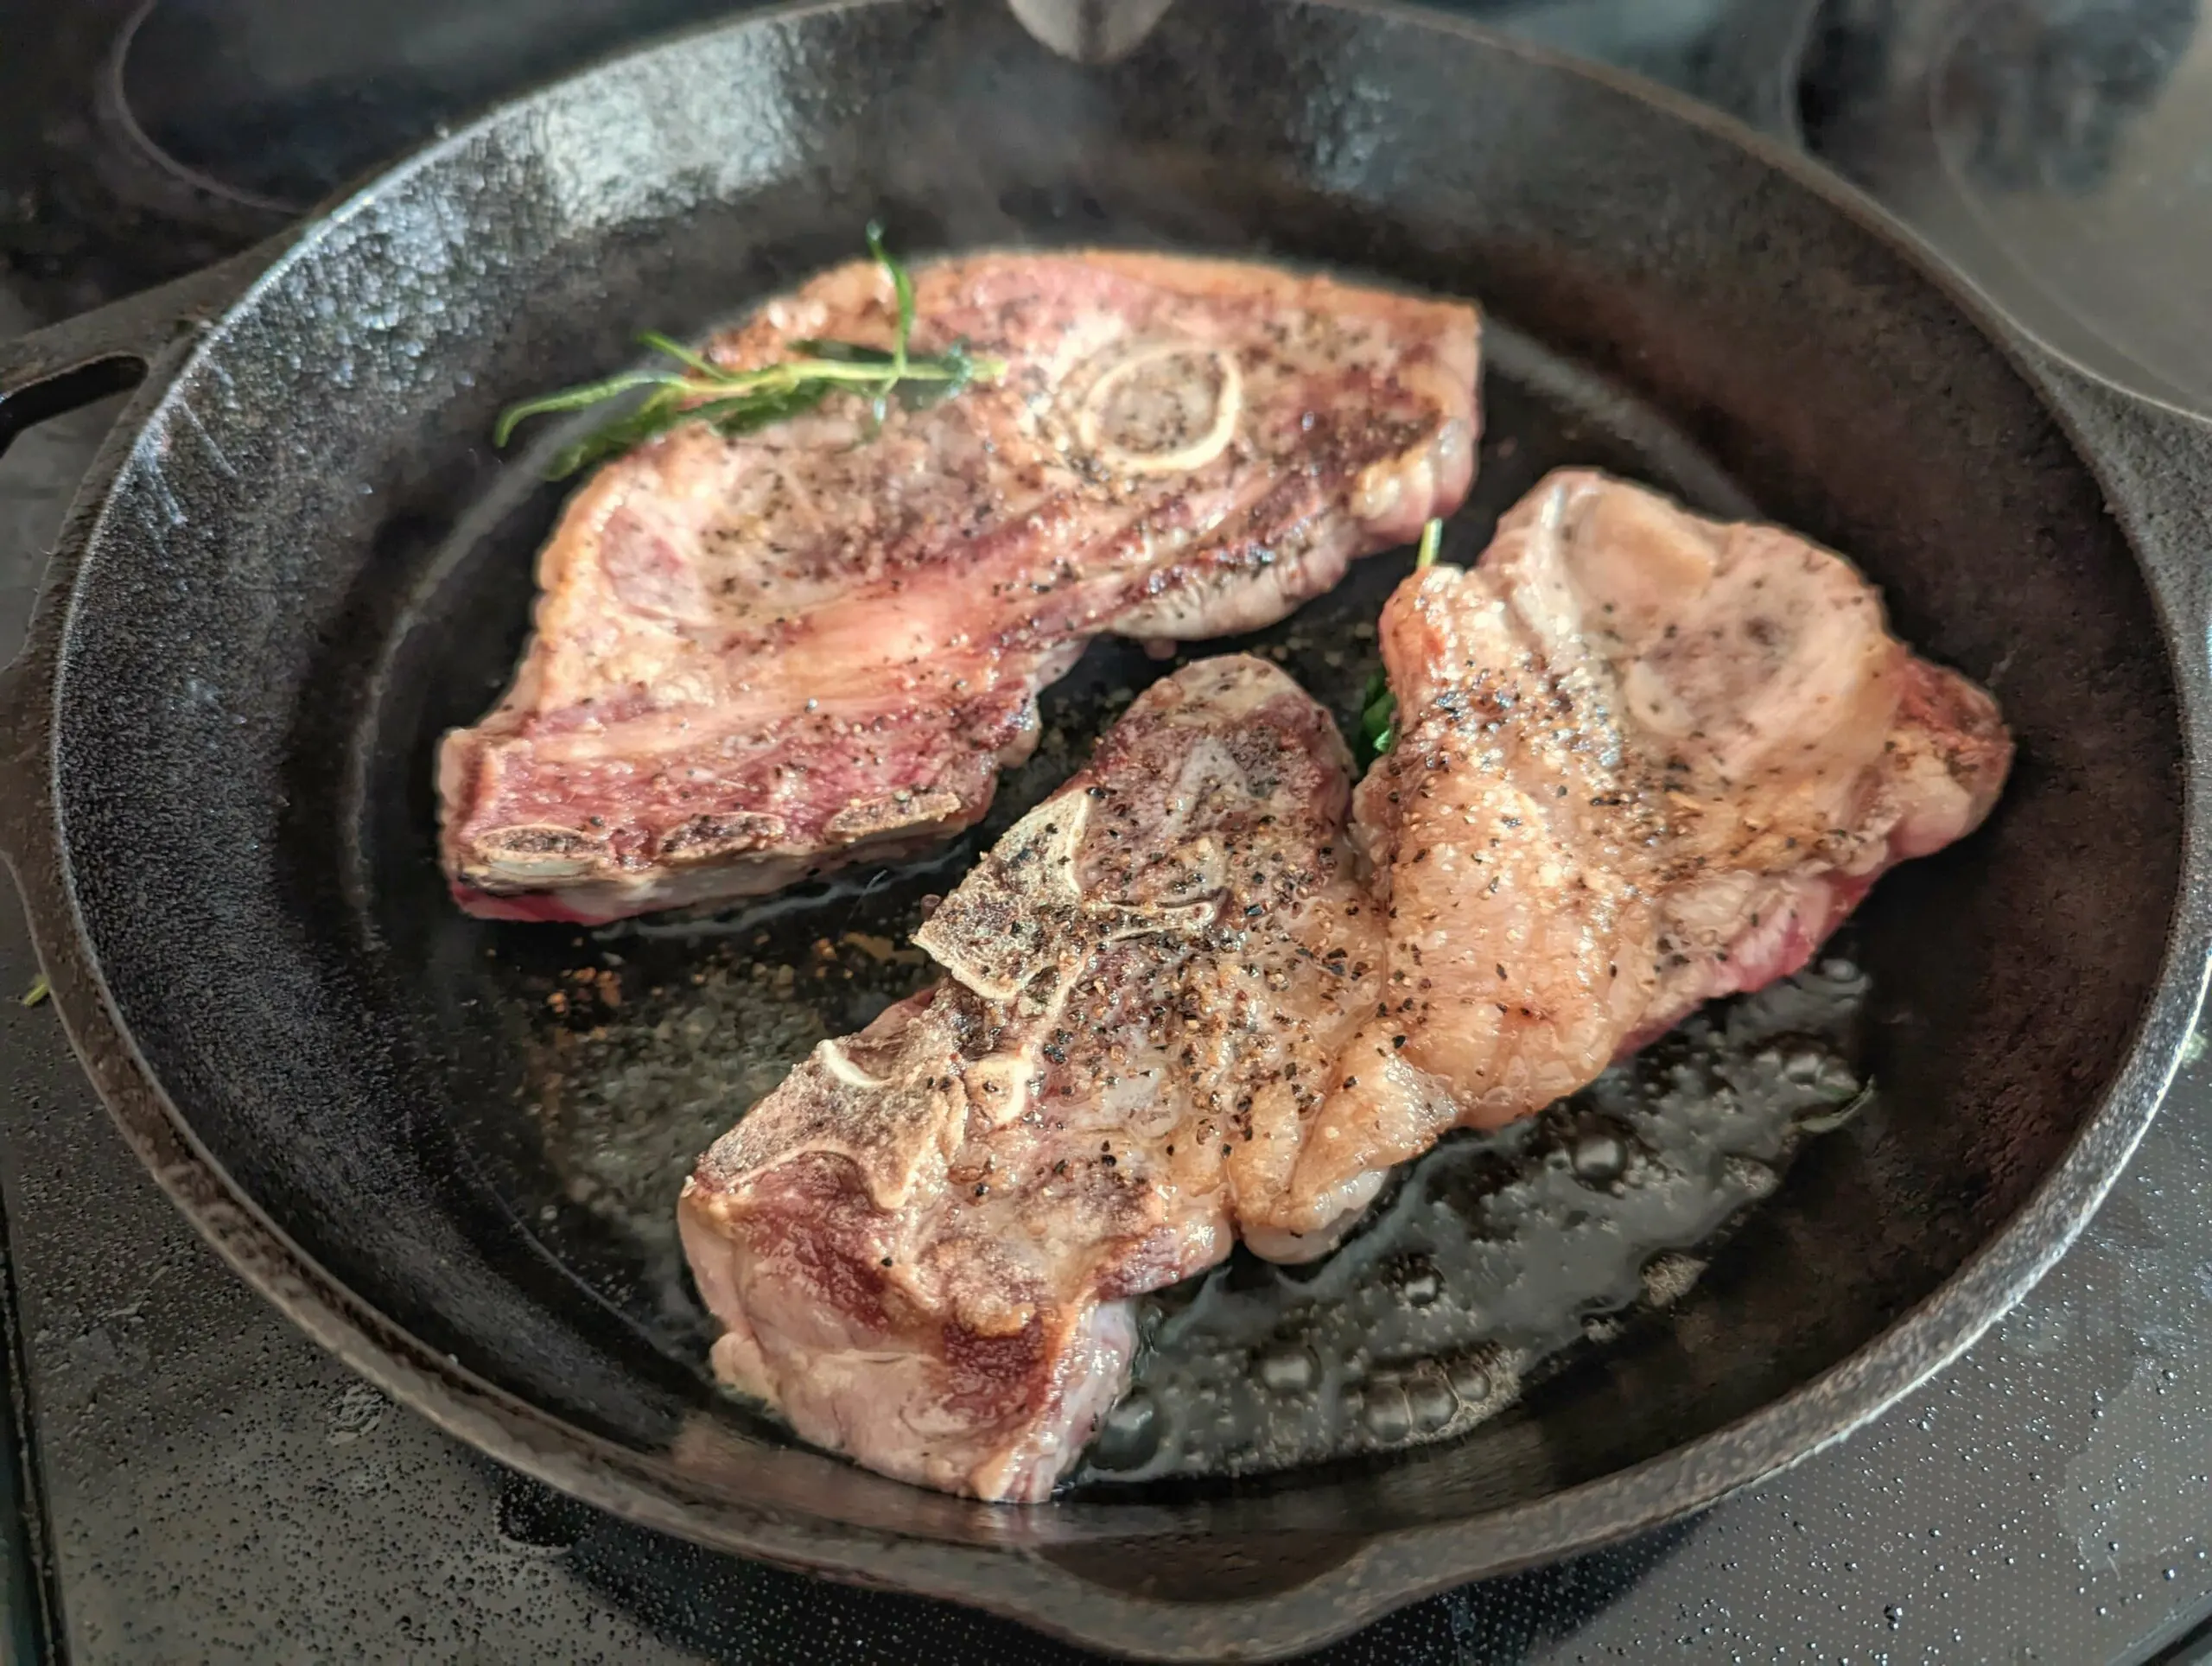 Lamb shoulder chops searing on a pan.